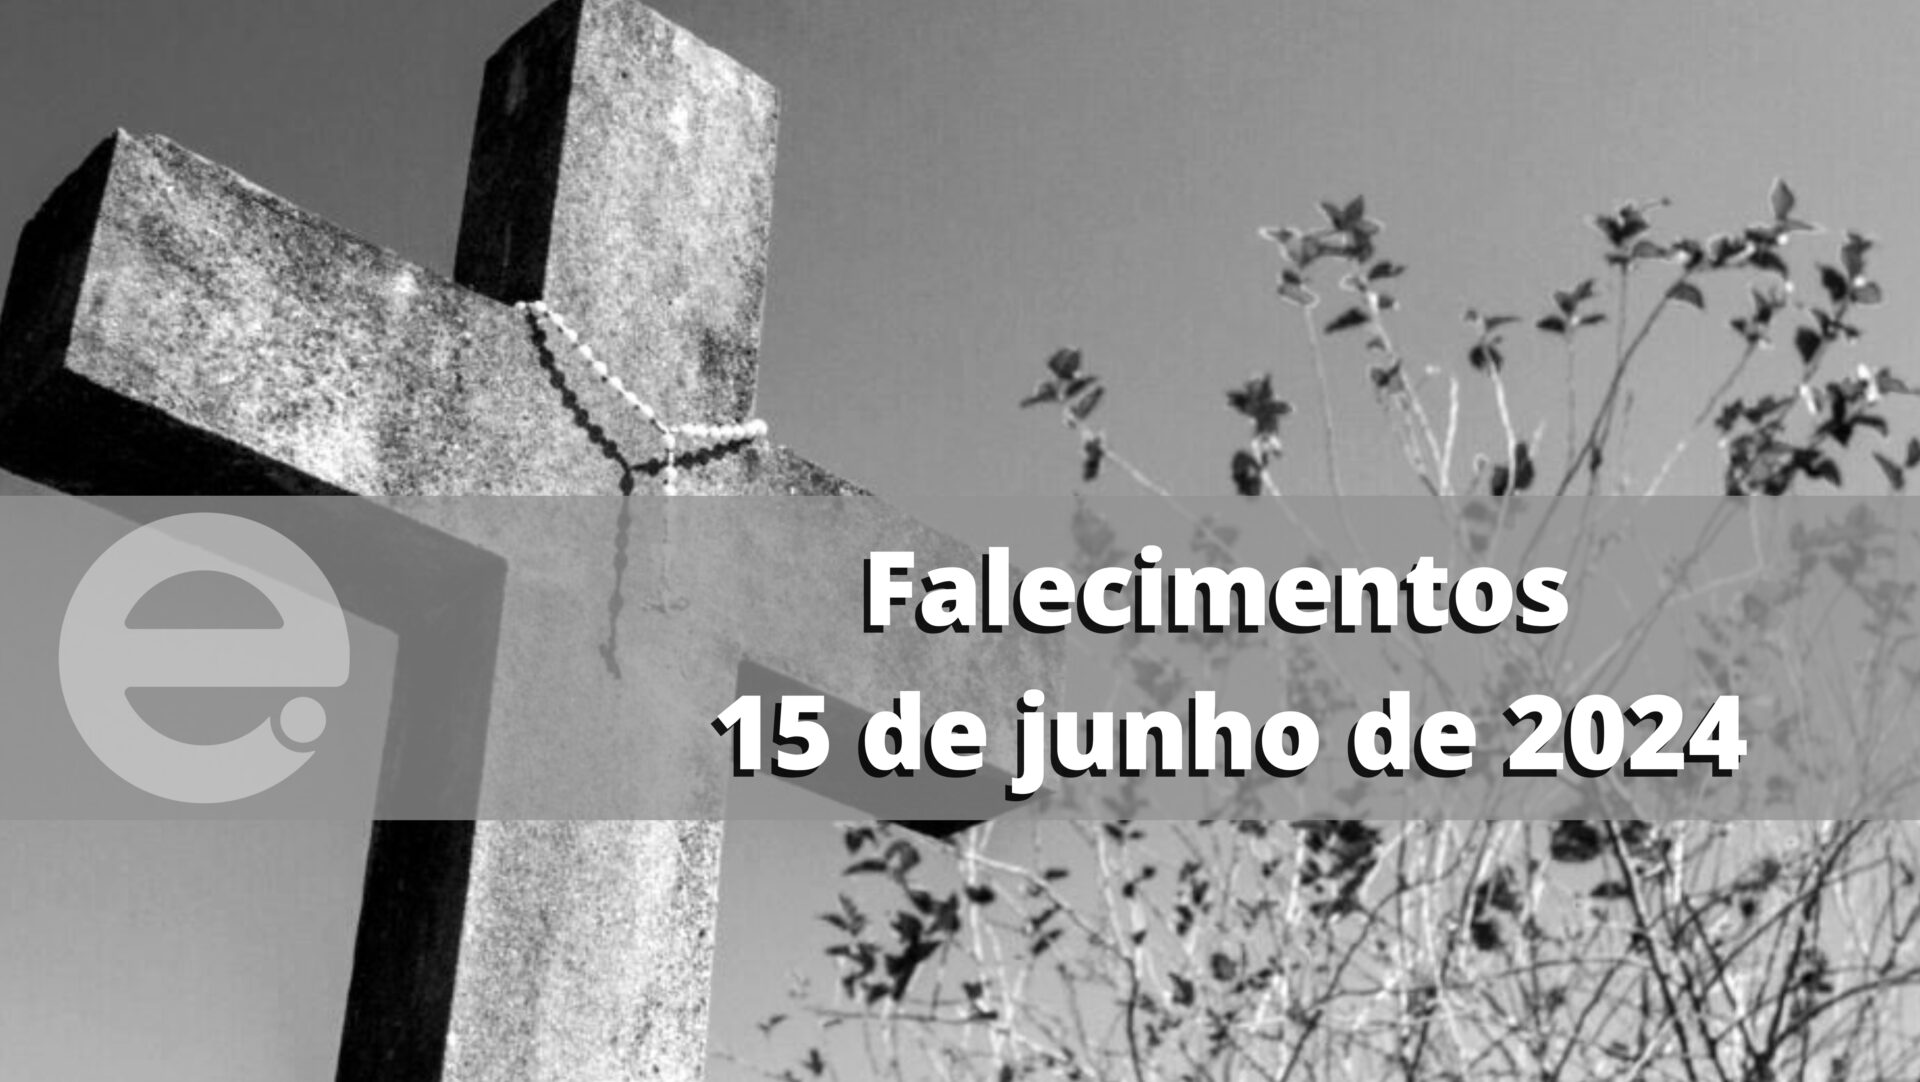 Confira os falecimentos deste sábado, 15 de junho de 2024, em Limeira